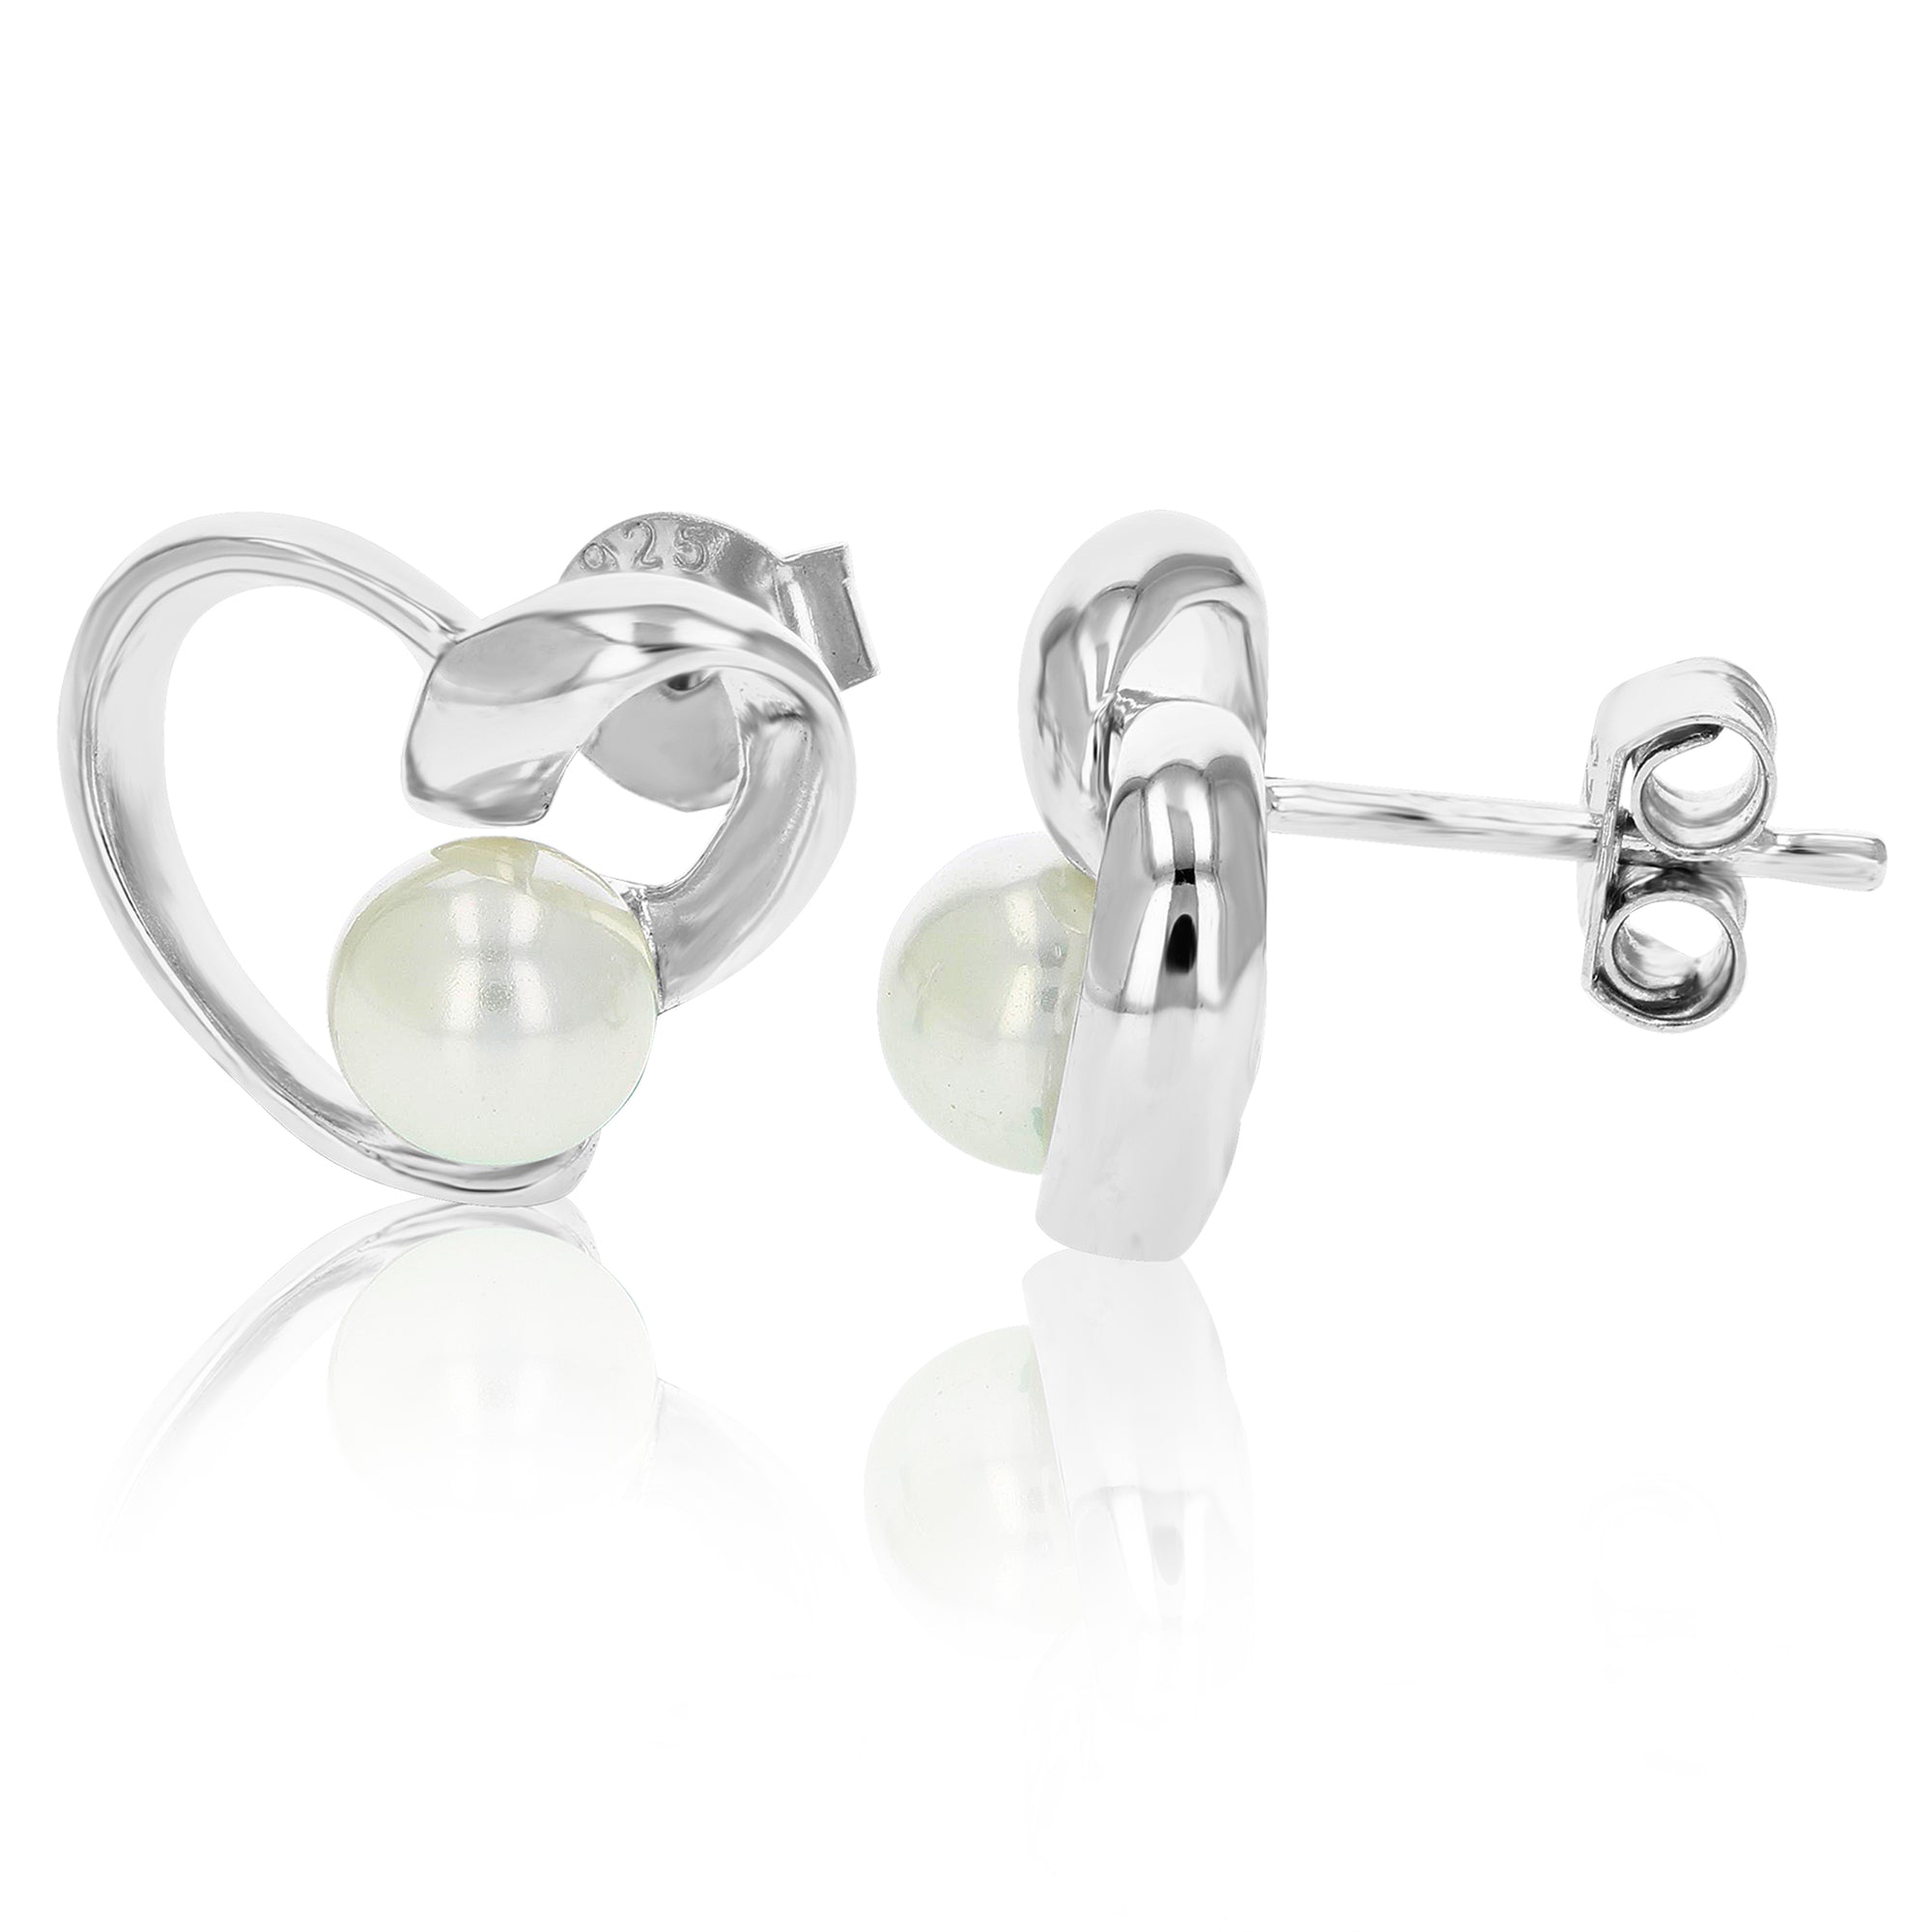 Sterling Silver Heart Earrings (5 MM Glass Pearl)